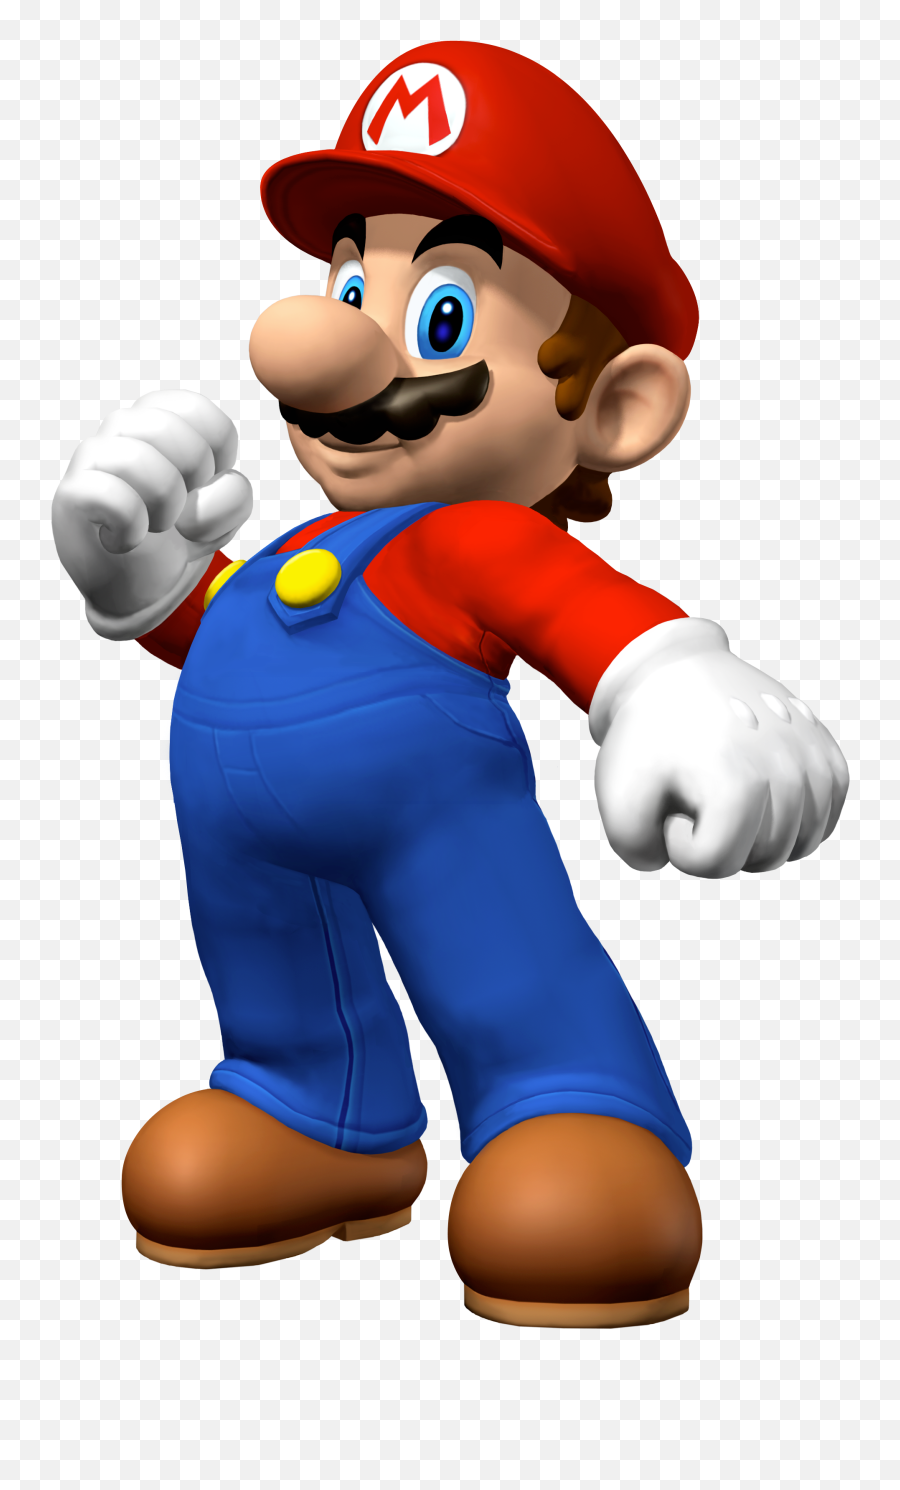 Mario Png - Mario Party 7 Mario,Mario Party Png